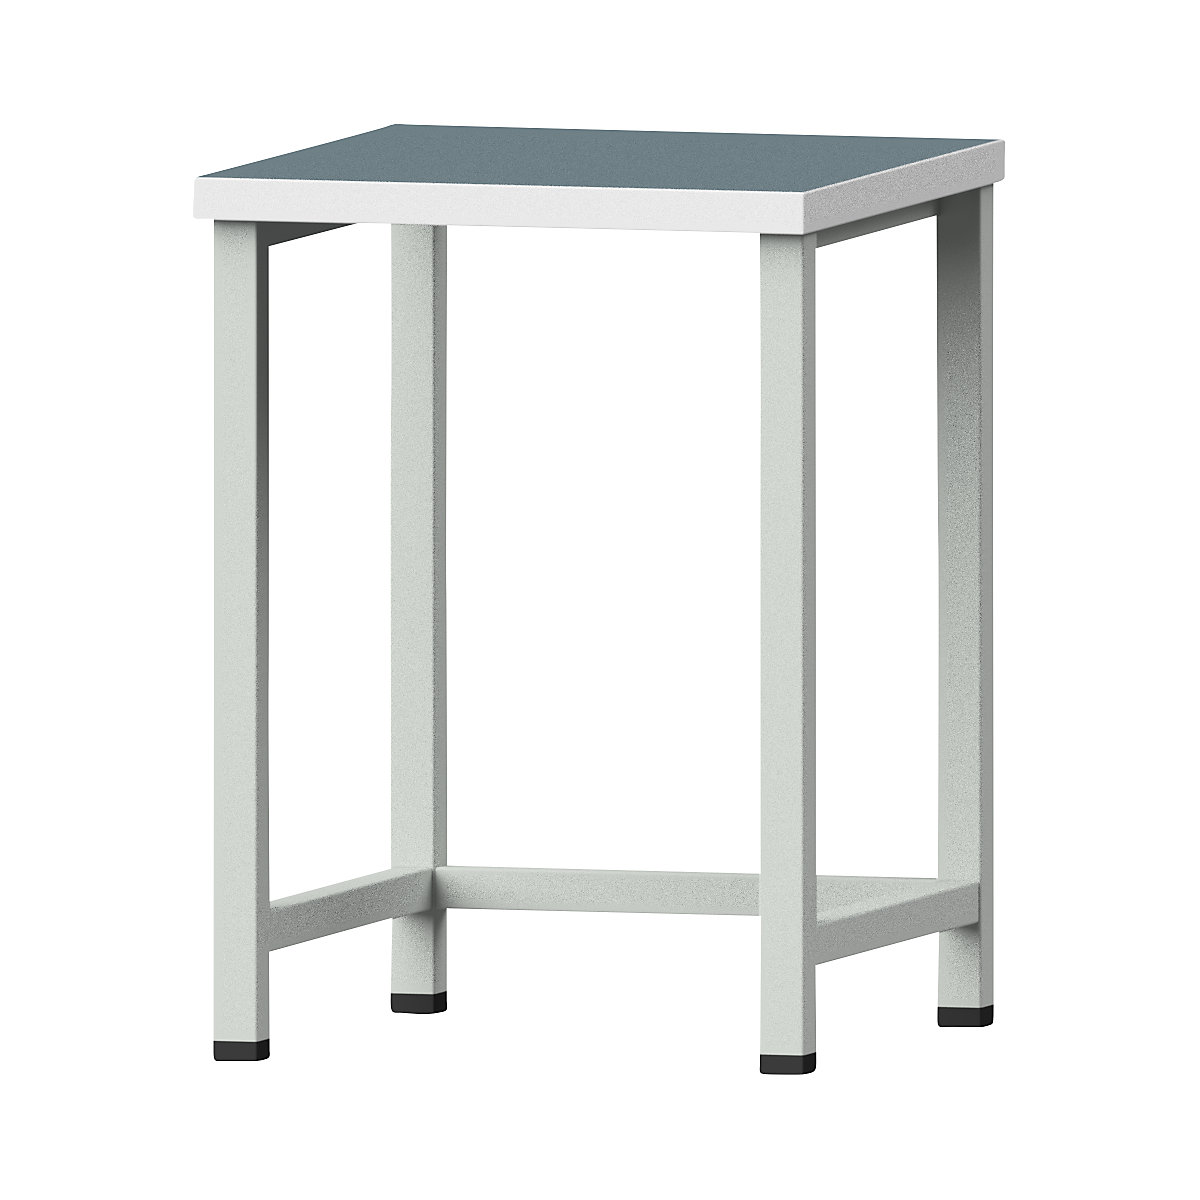 Kompaktowy stół warsztatowy – ANKE, szer. 605 mm, bez szafek dolnych, stacjonarny, płyta uniwersalna-5